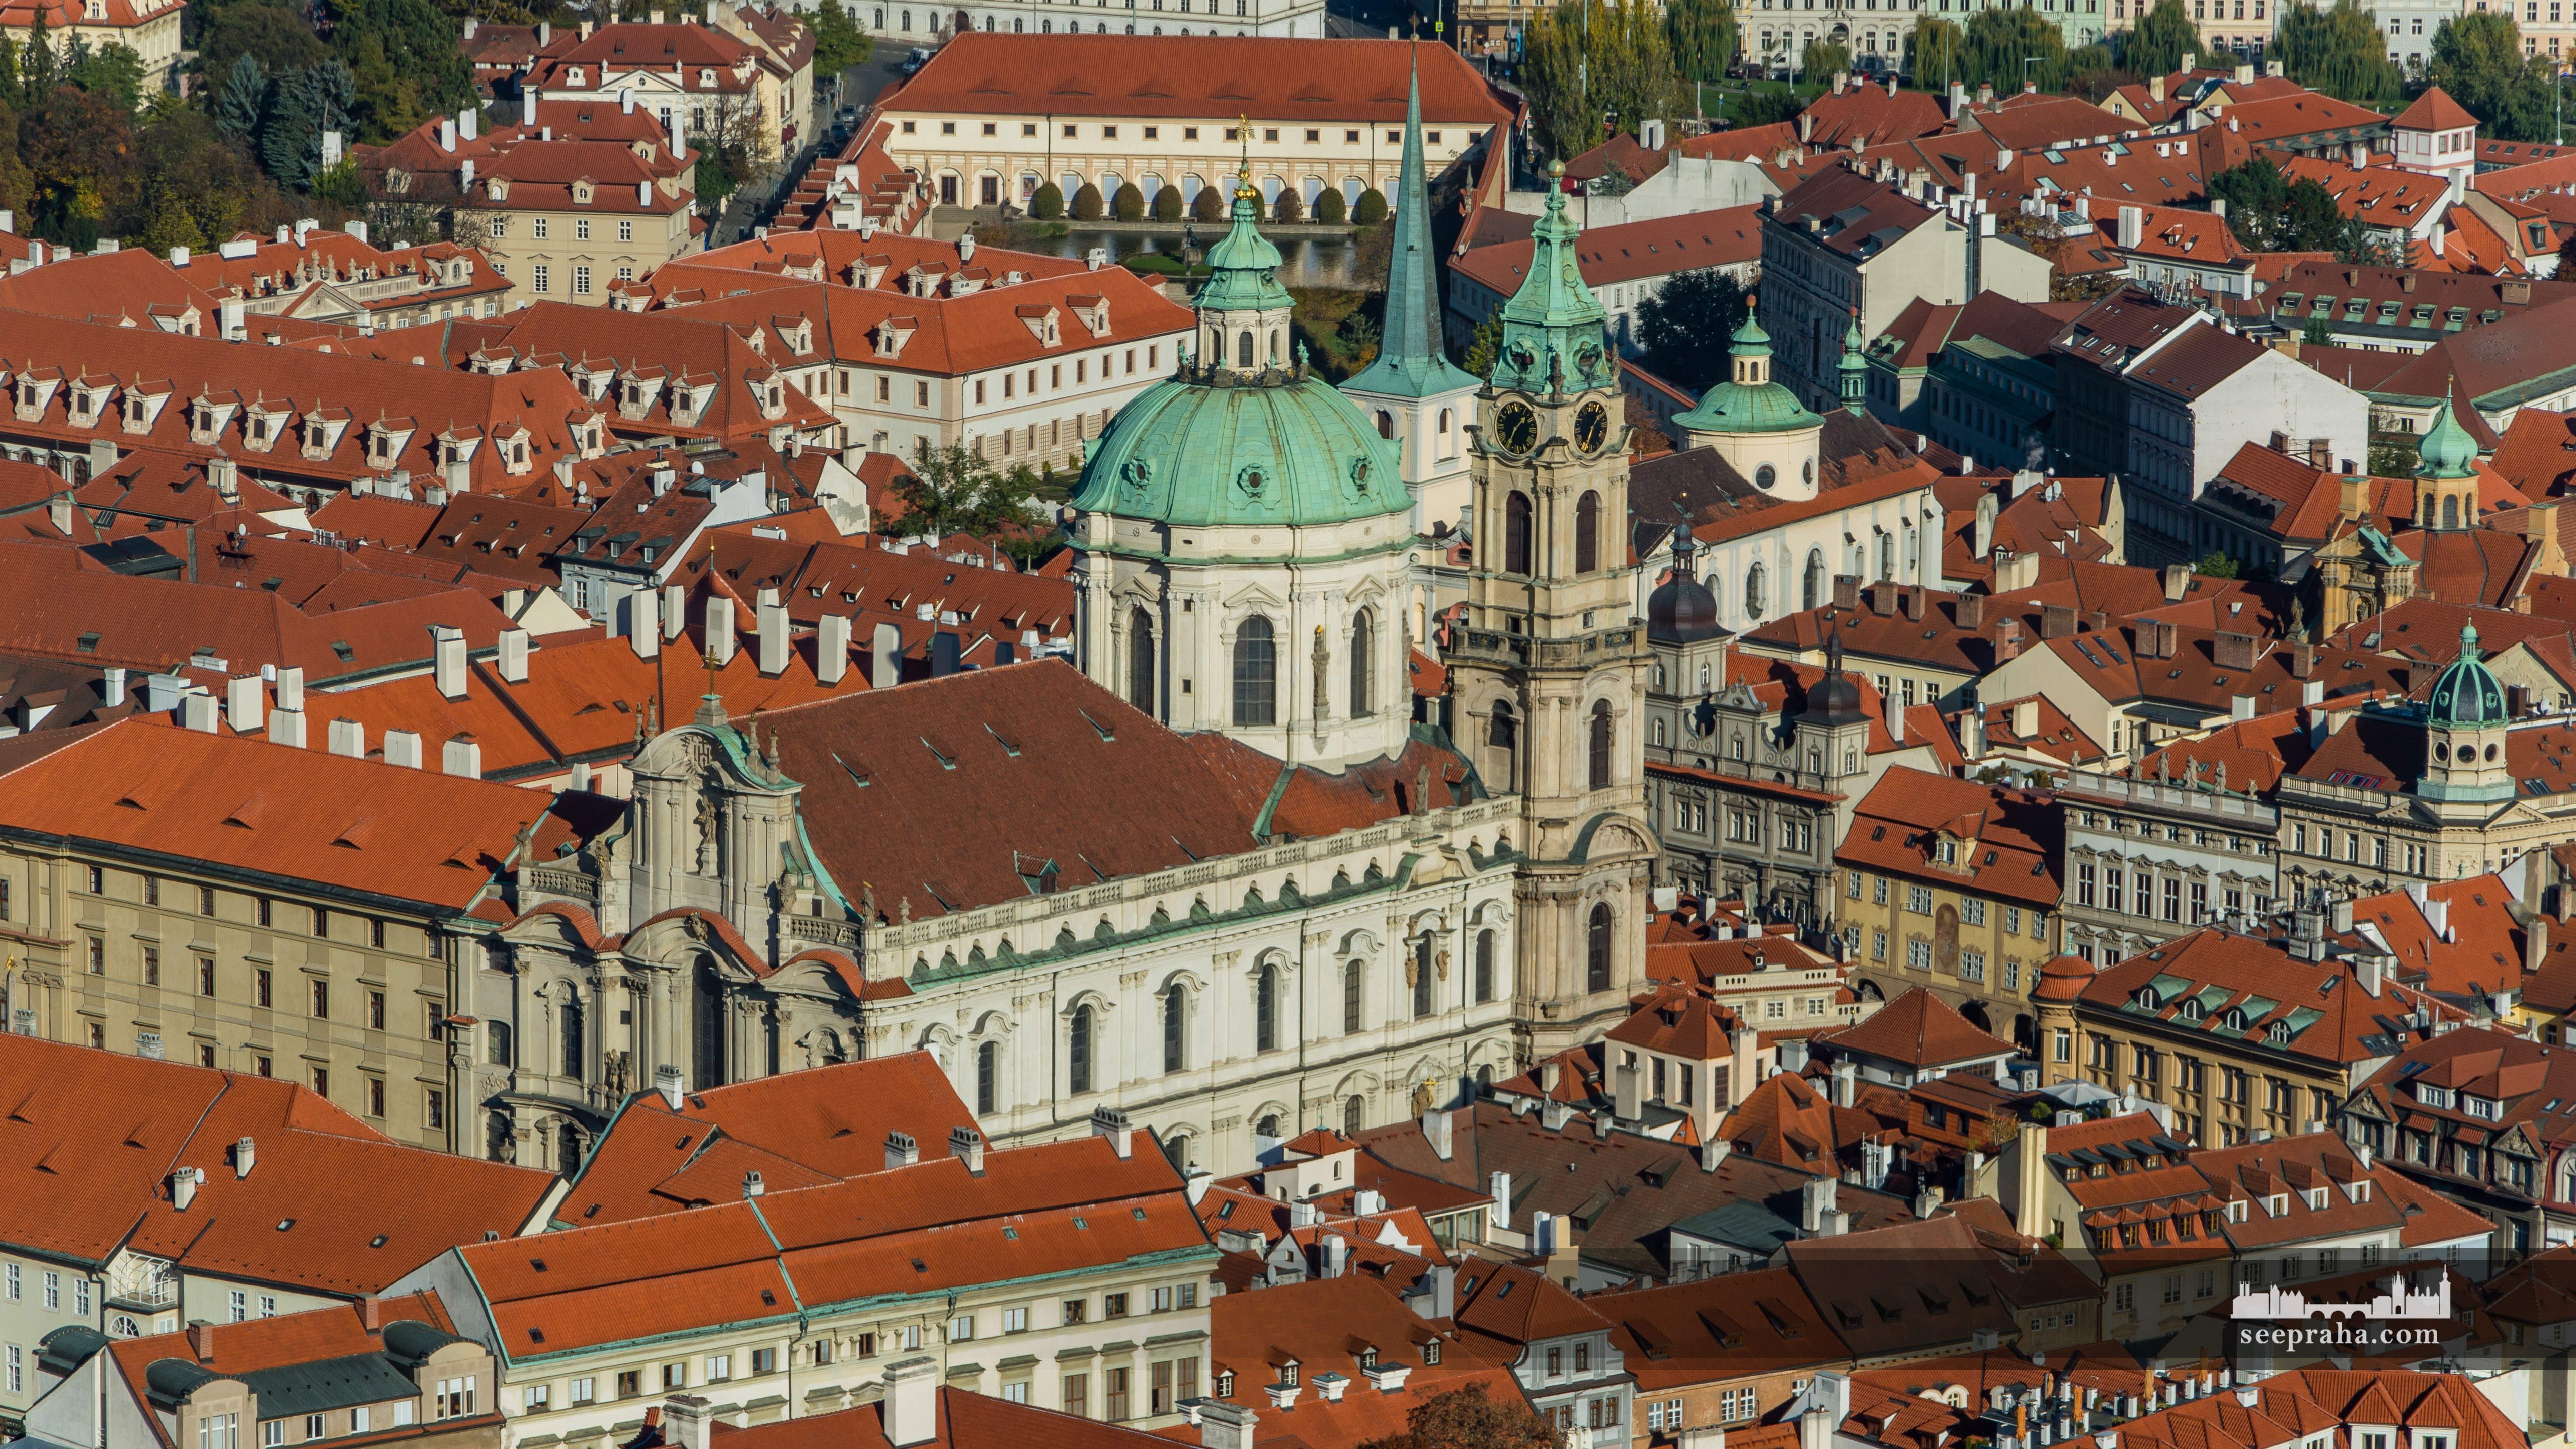 Widok kościoła św. Mikołaja ze wzgórza Petřín, Praga, Czechy